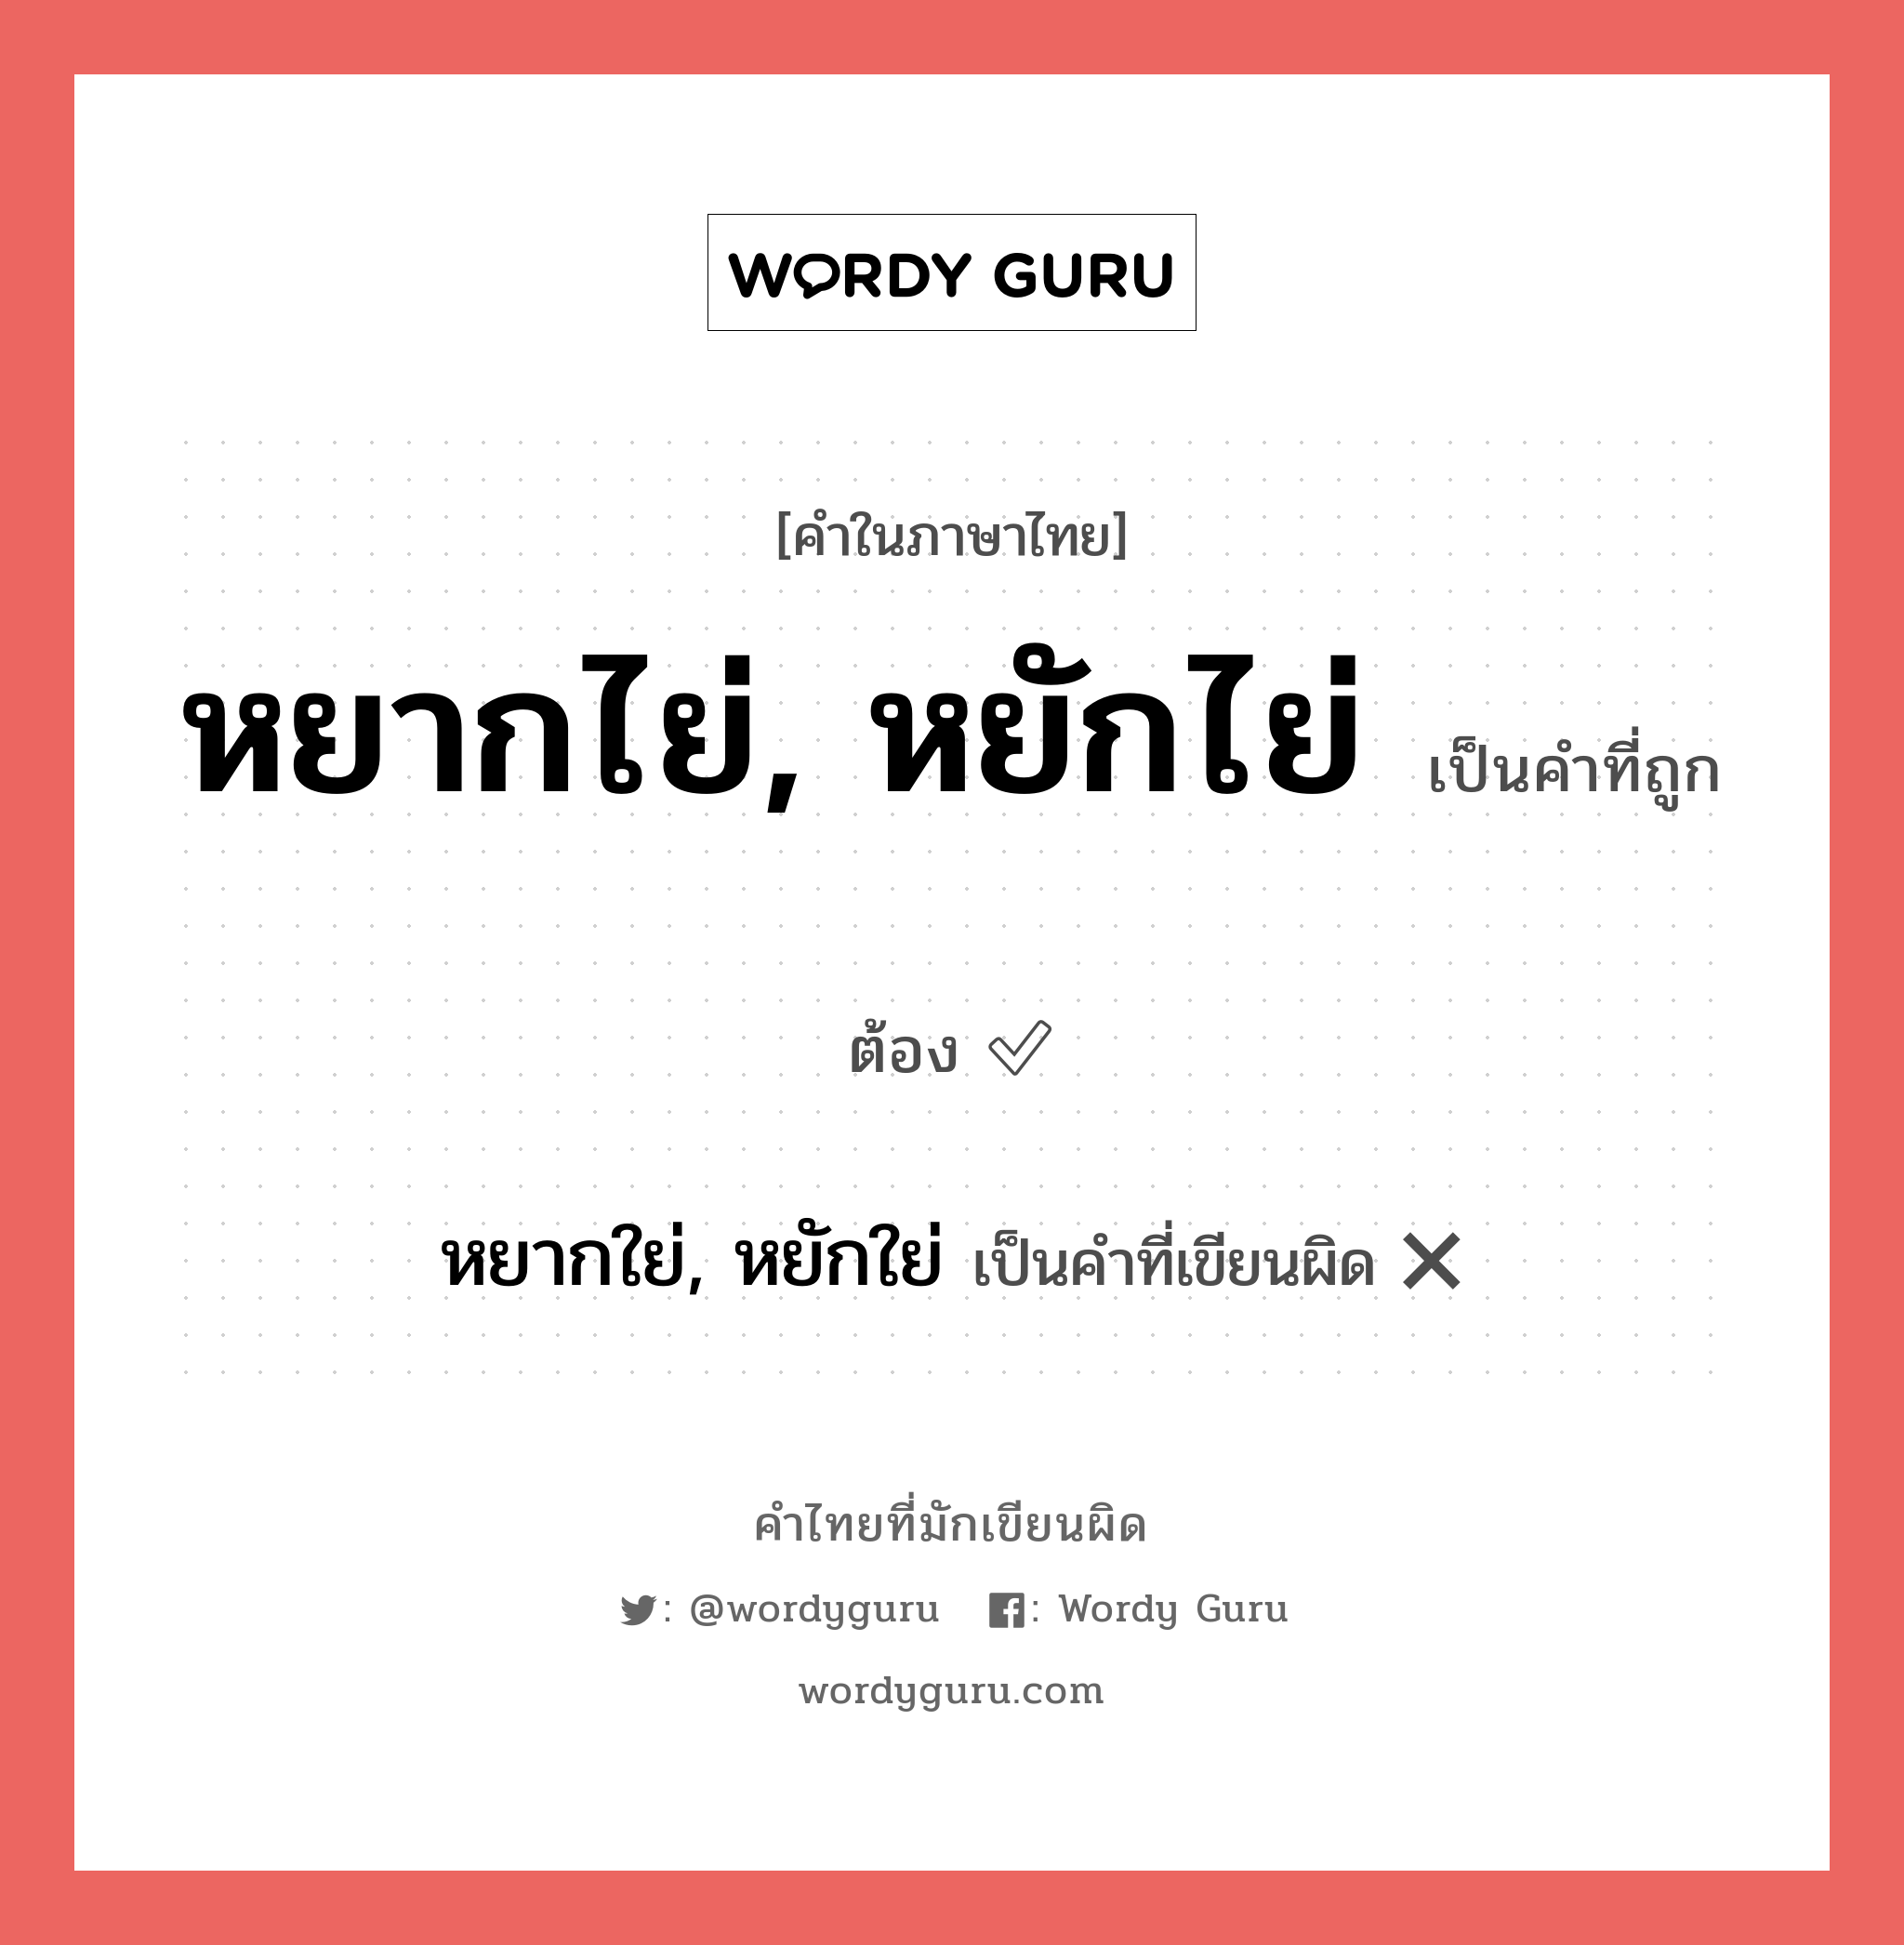 หยากไย่, หยักไย่ หรือ หยากใย่, หยักใย่ คำไหนเขียนถูก?, คำในภาษาไทยที่มักเขียนผิด หยากไย่, หยักไย่ คำที่ผิด ❌ หยากใย่, หยักใย่